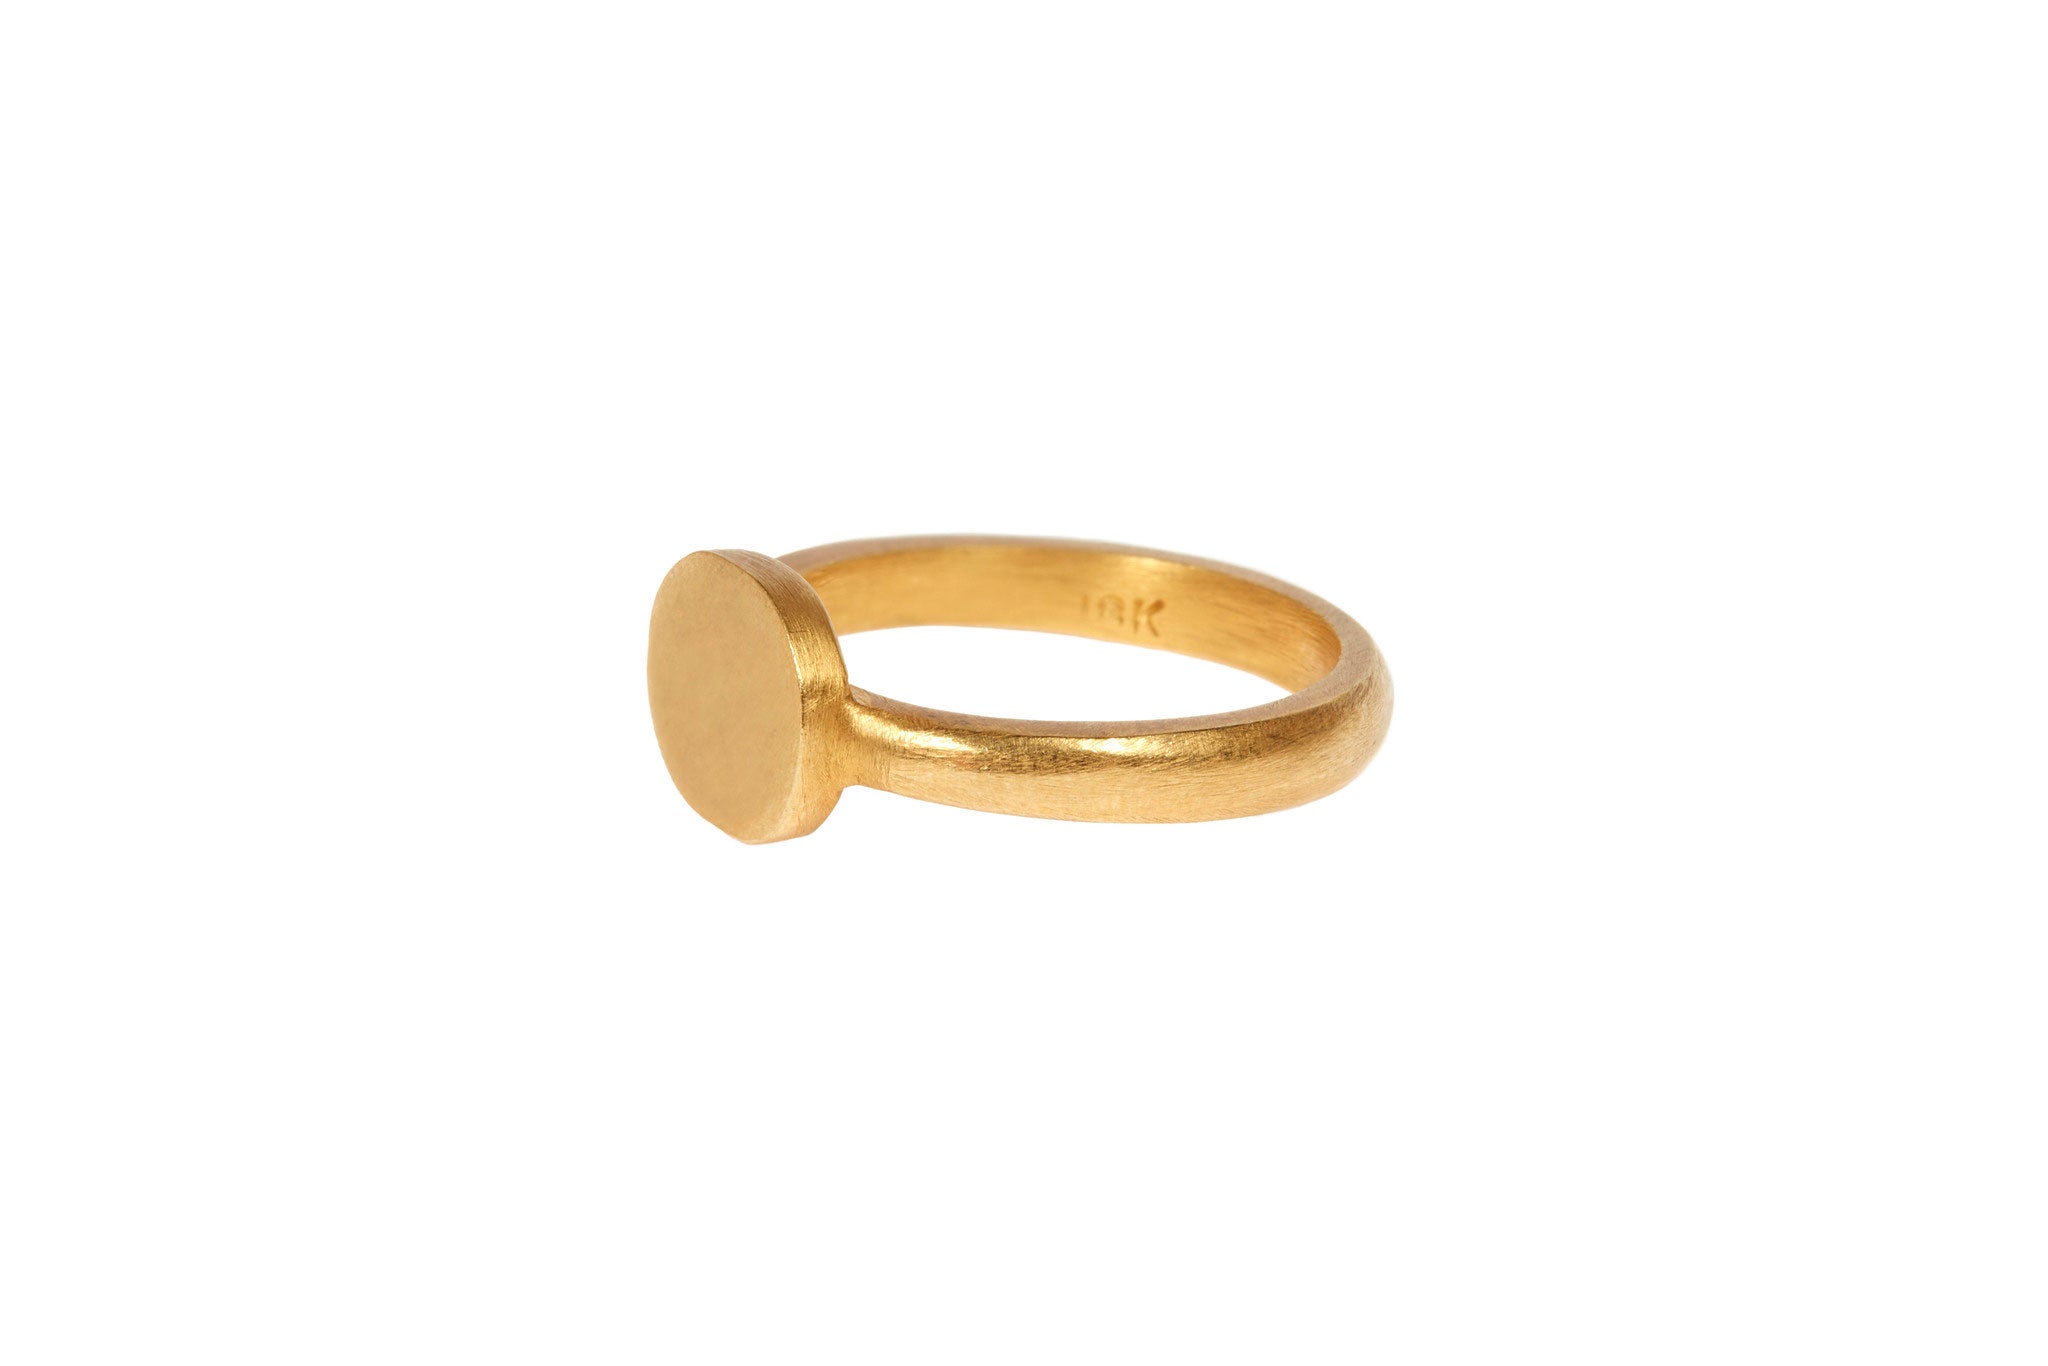 darius jewels hand made fine jewelry 18k yellow gold signet ring v.3 darius khonsary